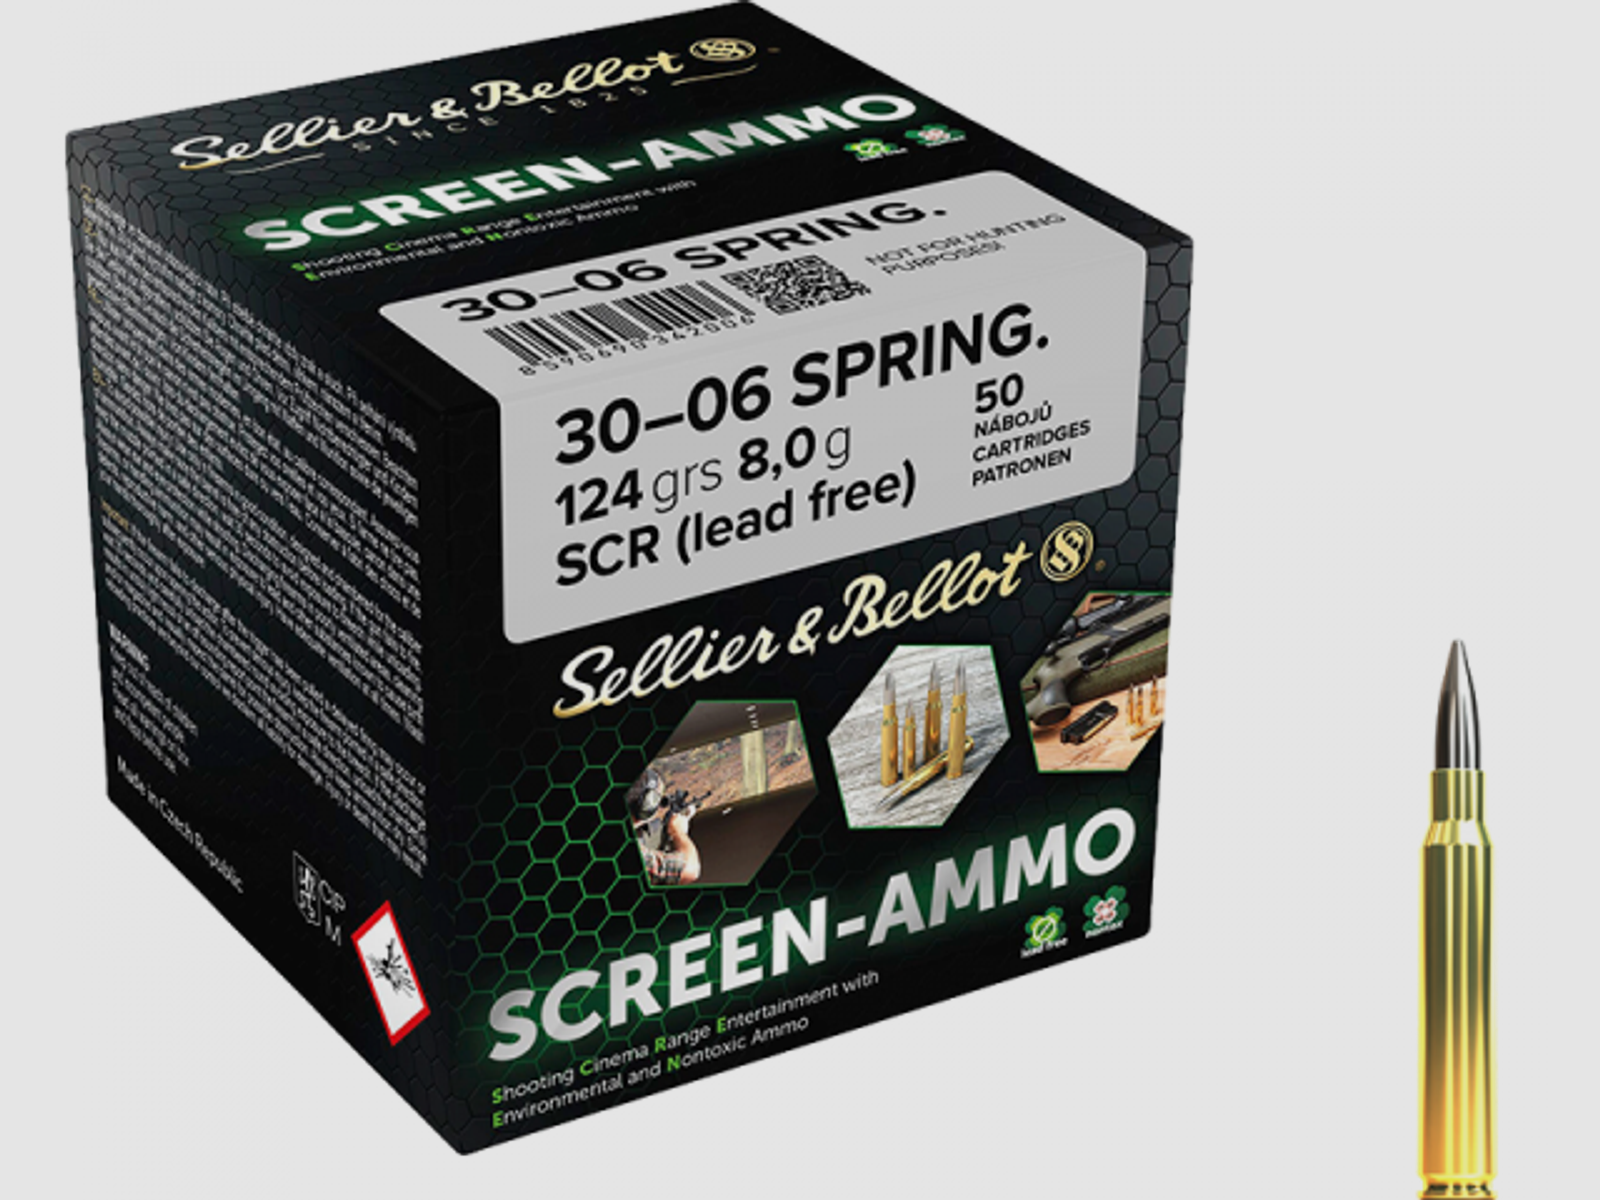 Sellier & Bellot Screen-Ammo .30-06 Springfield 124 grs Büchsenpatronen